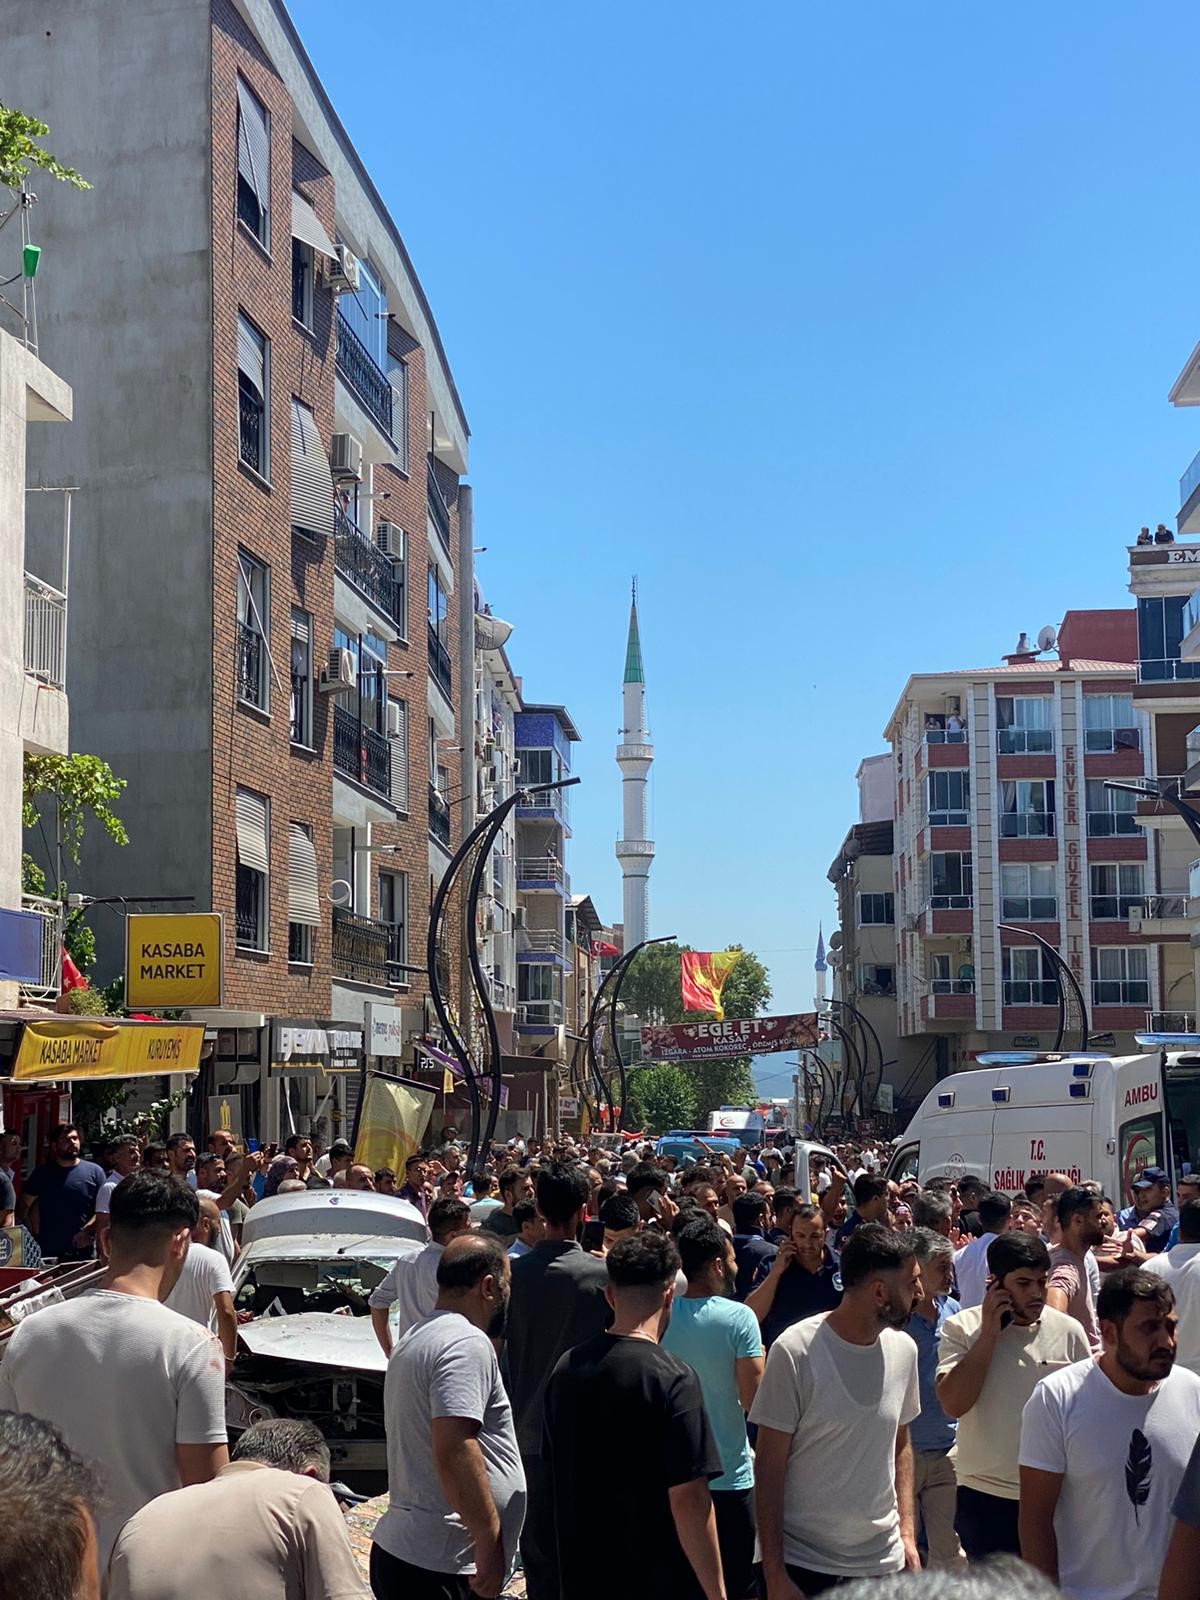 İzmir'de doğal gaz patlaması: 2 ölü, 16 yaralı